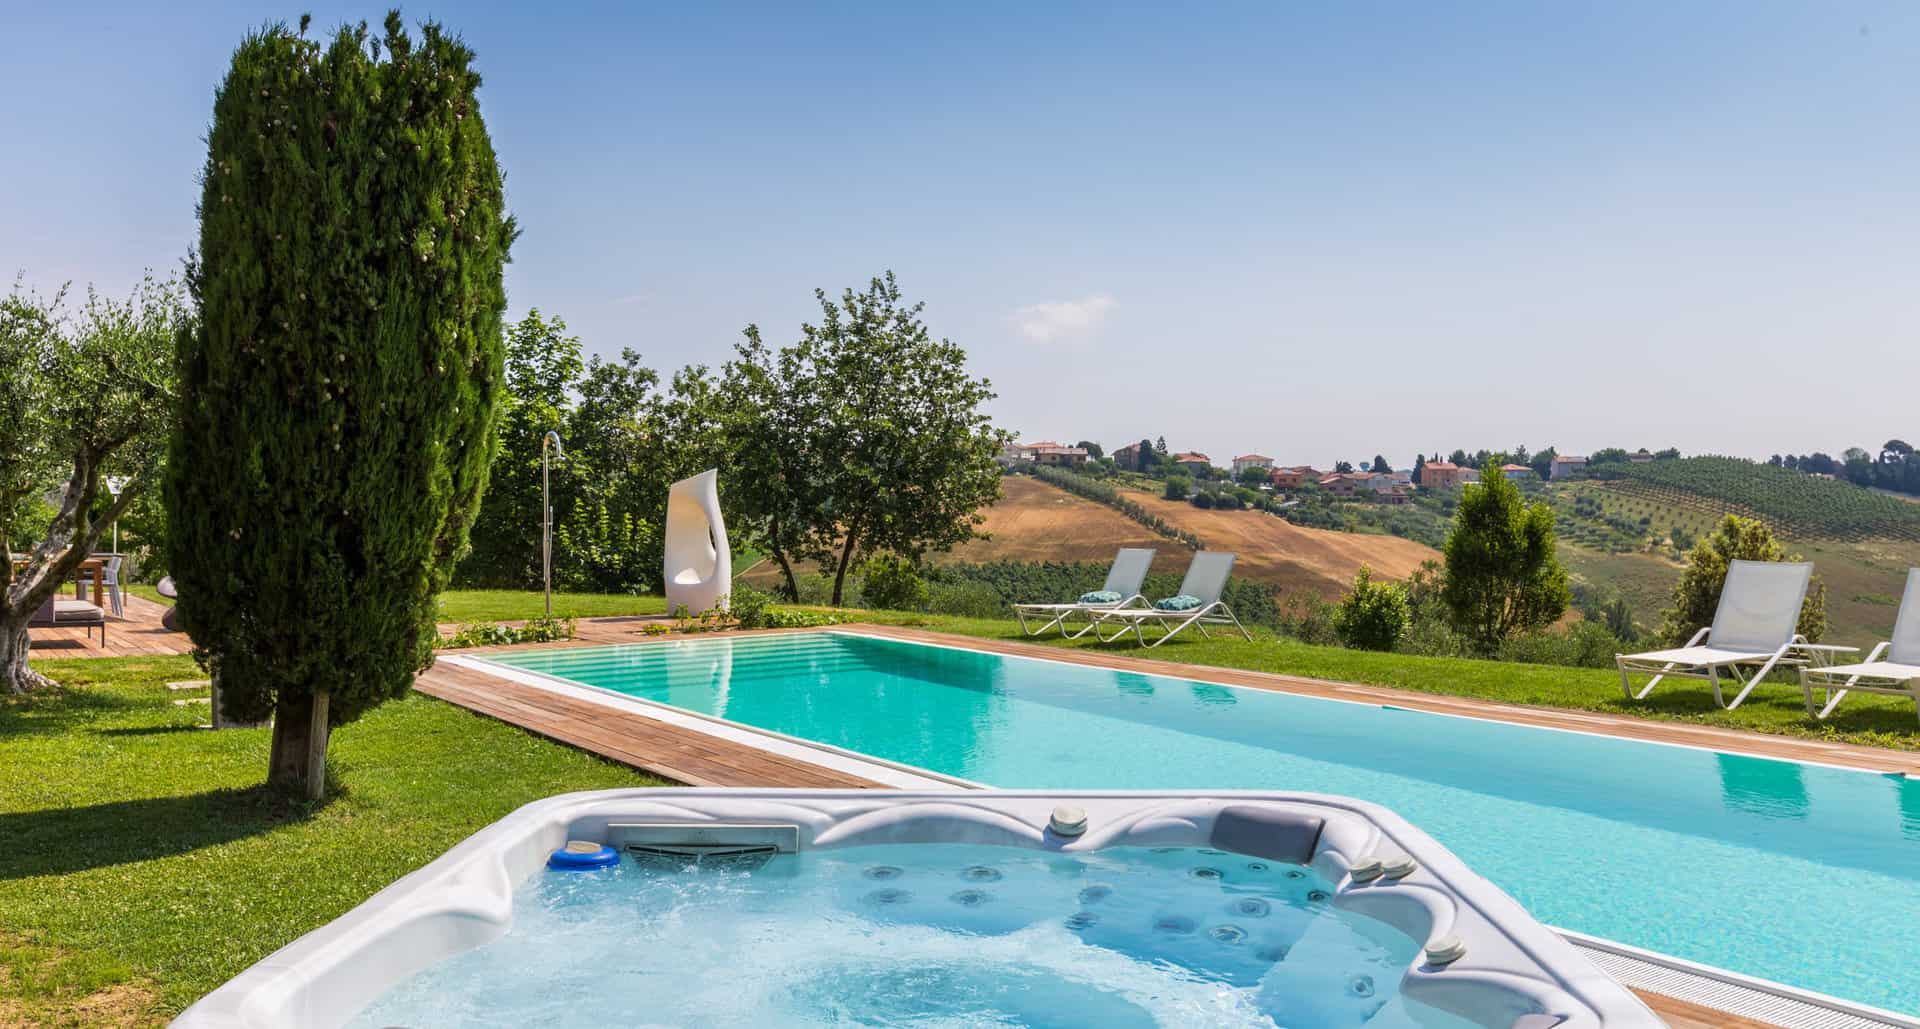 Eine Ferienvilla mit Pool für den Urlaub in Italien